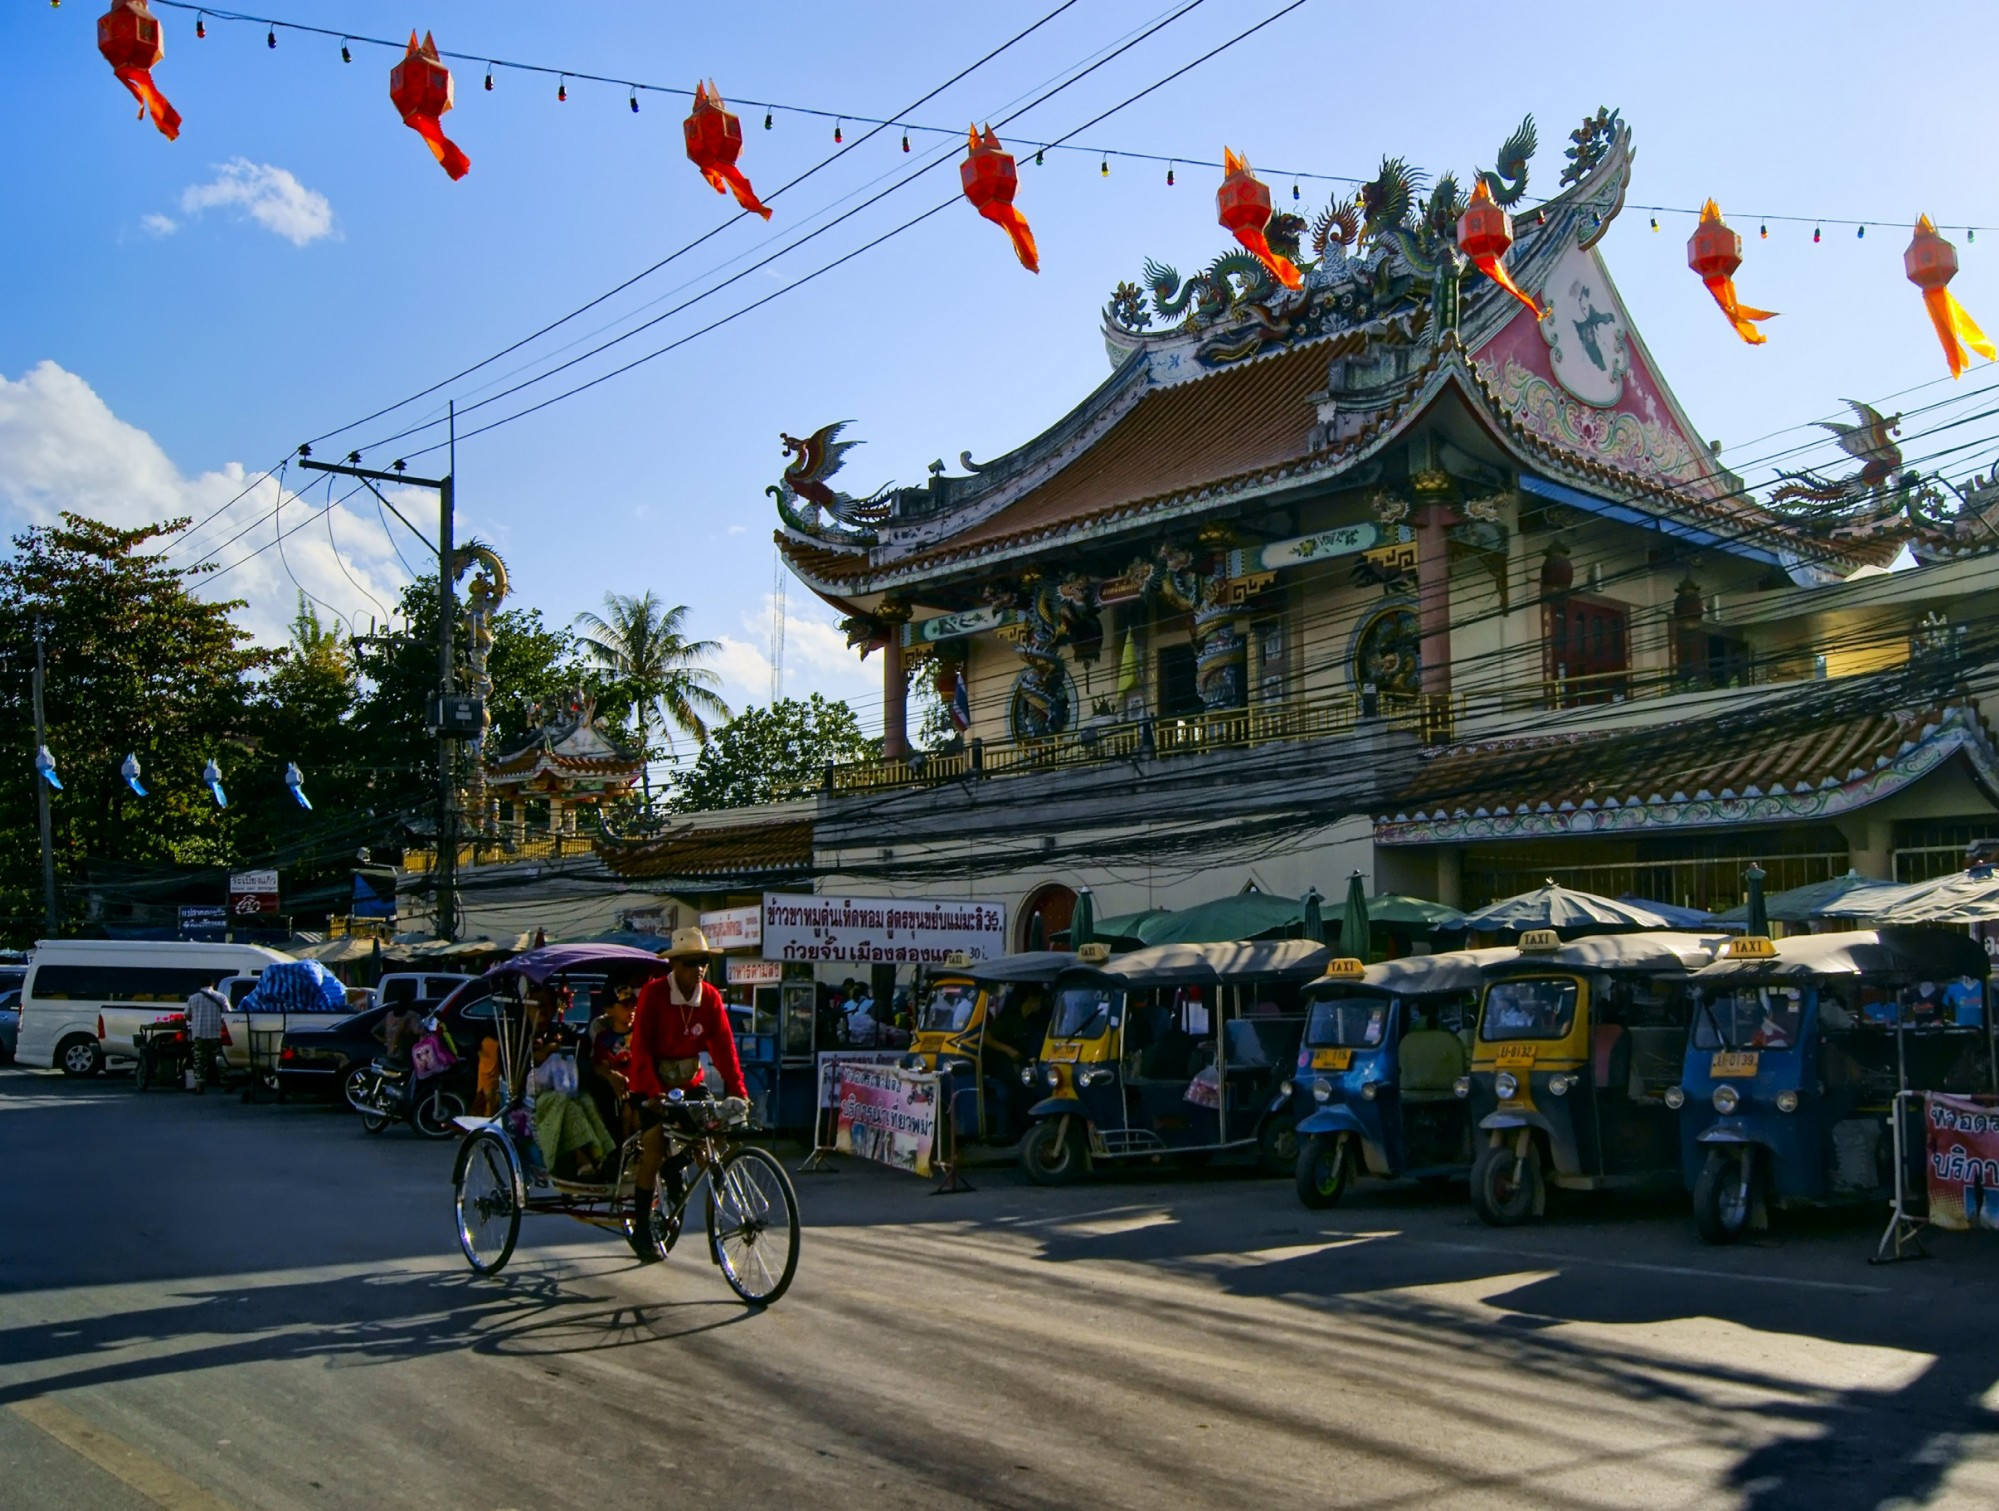 Китайский храм Чао Пор Там Коб расположен на главной улице городка Мае Сай в провинции Чианграй на севере Таиланда у границы с Мьянмой. Интересная и своеобразная архитектура бросается в глаза, не смотря на то, что храм буквально окружён оживлённым вещевым и продовольственным рынком, велорикшами и тук-туками.